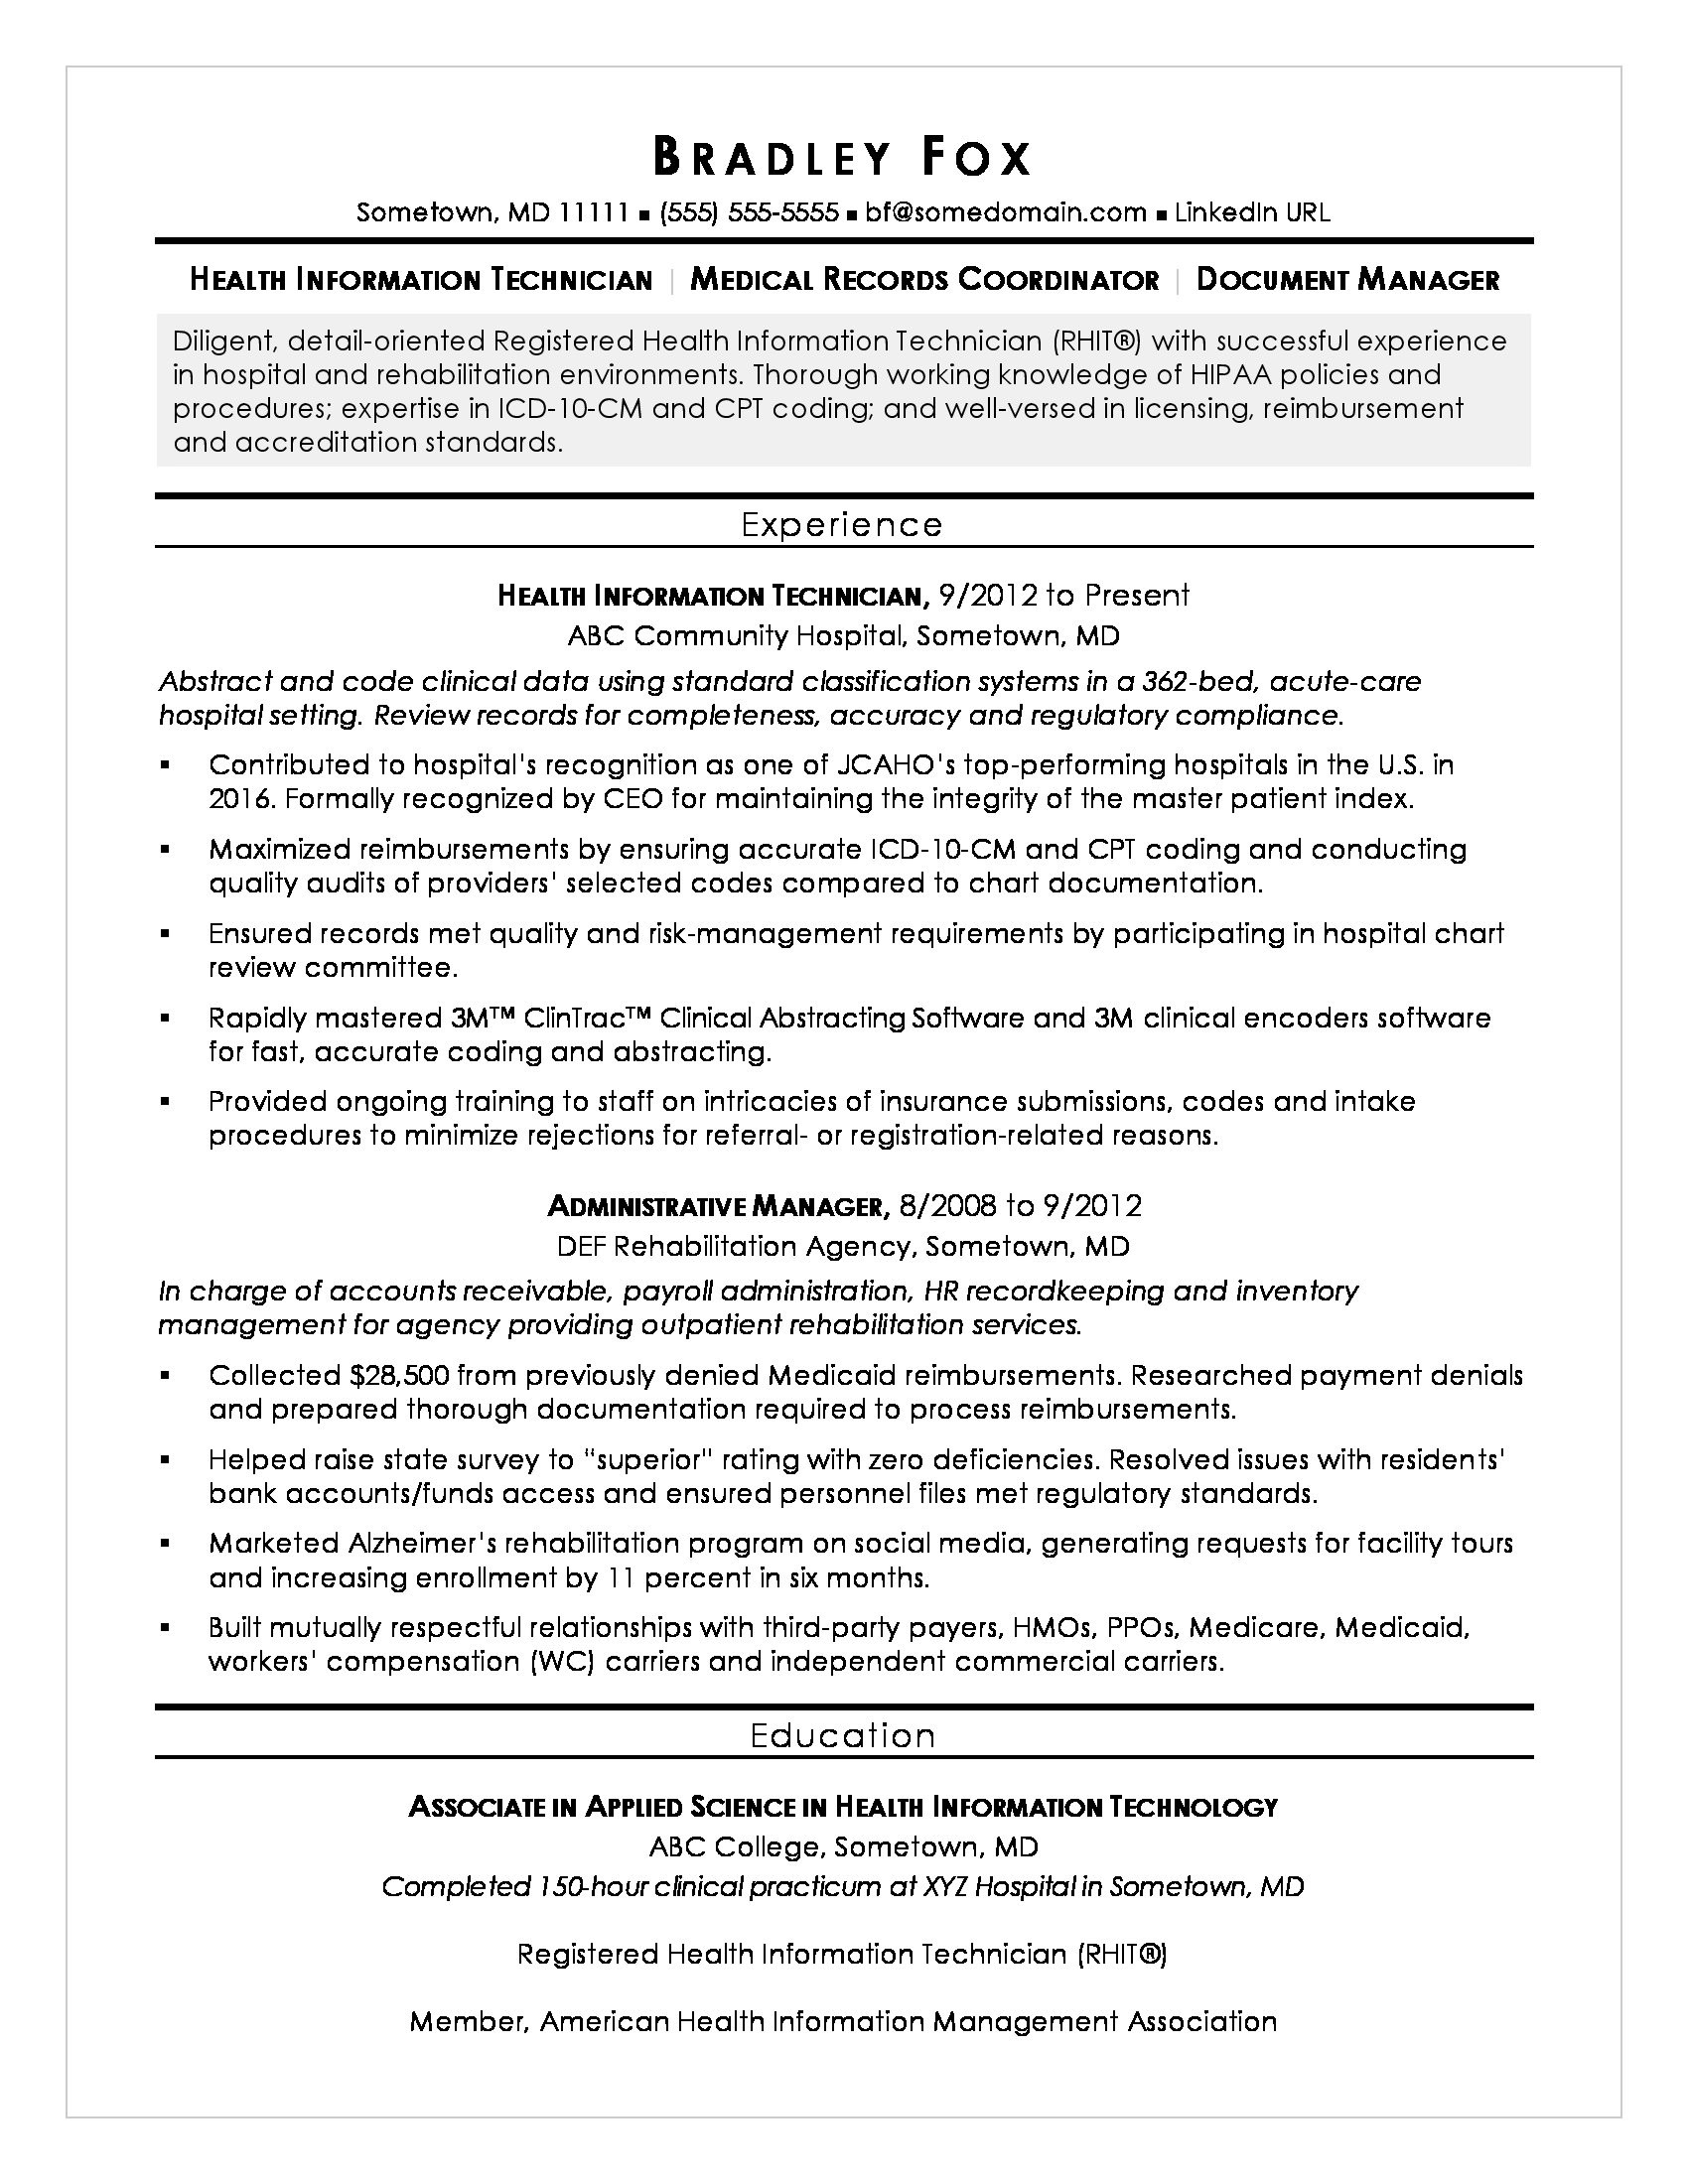 Sample Resume for Health Informatics Specialist Health Information Technician Sample Resume Monster.com